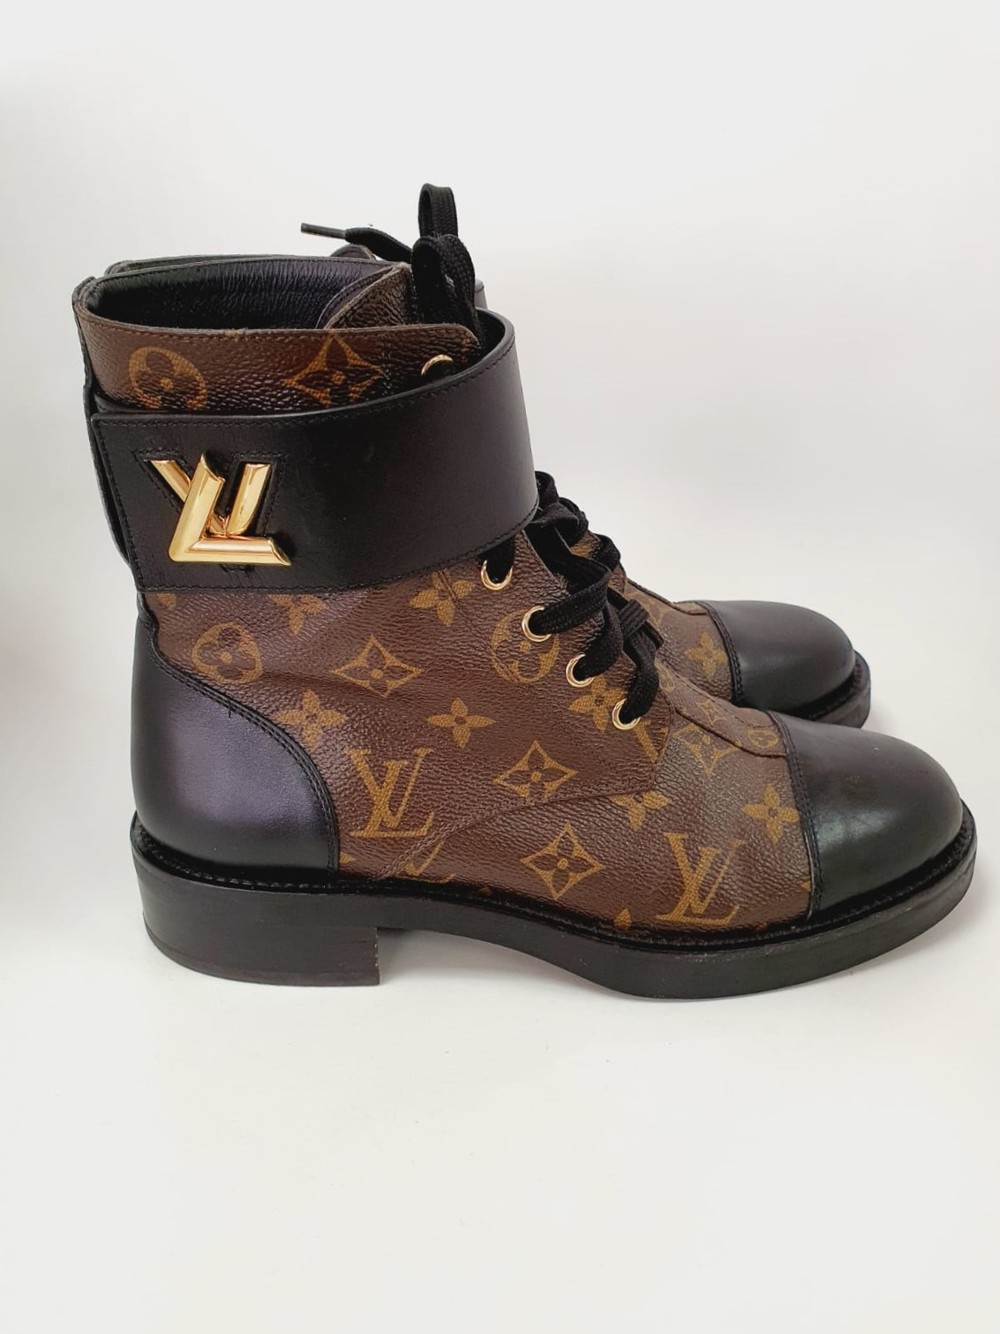 Coturno Louis Vuitton Wonderland - 2nd Chance